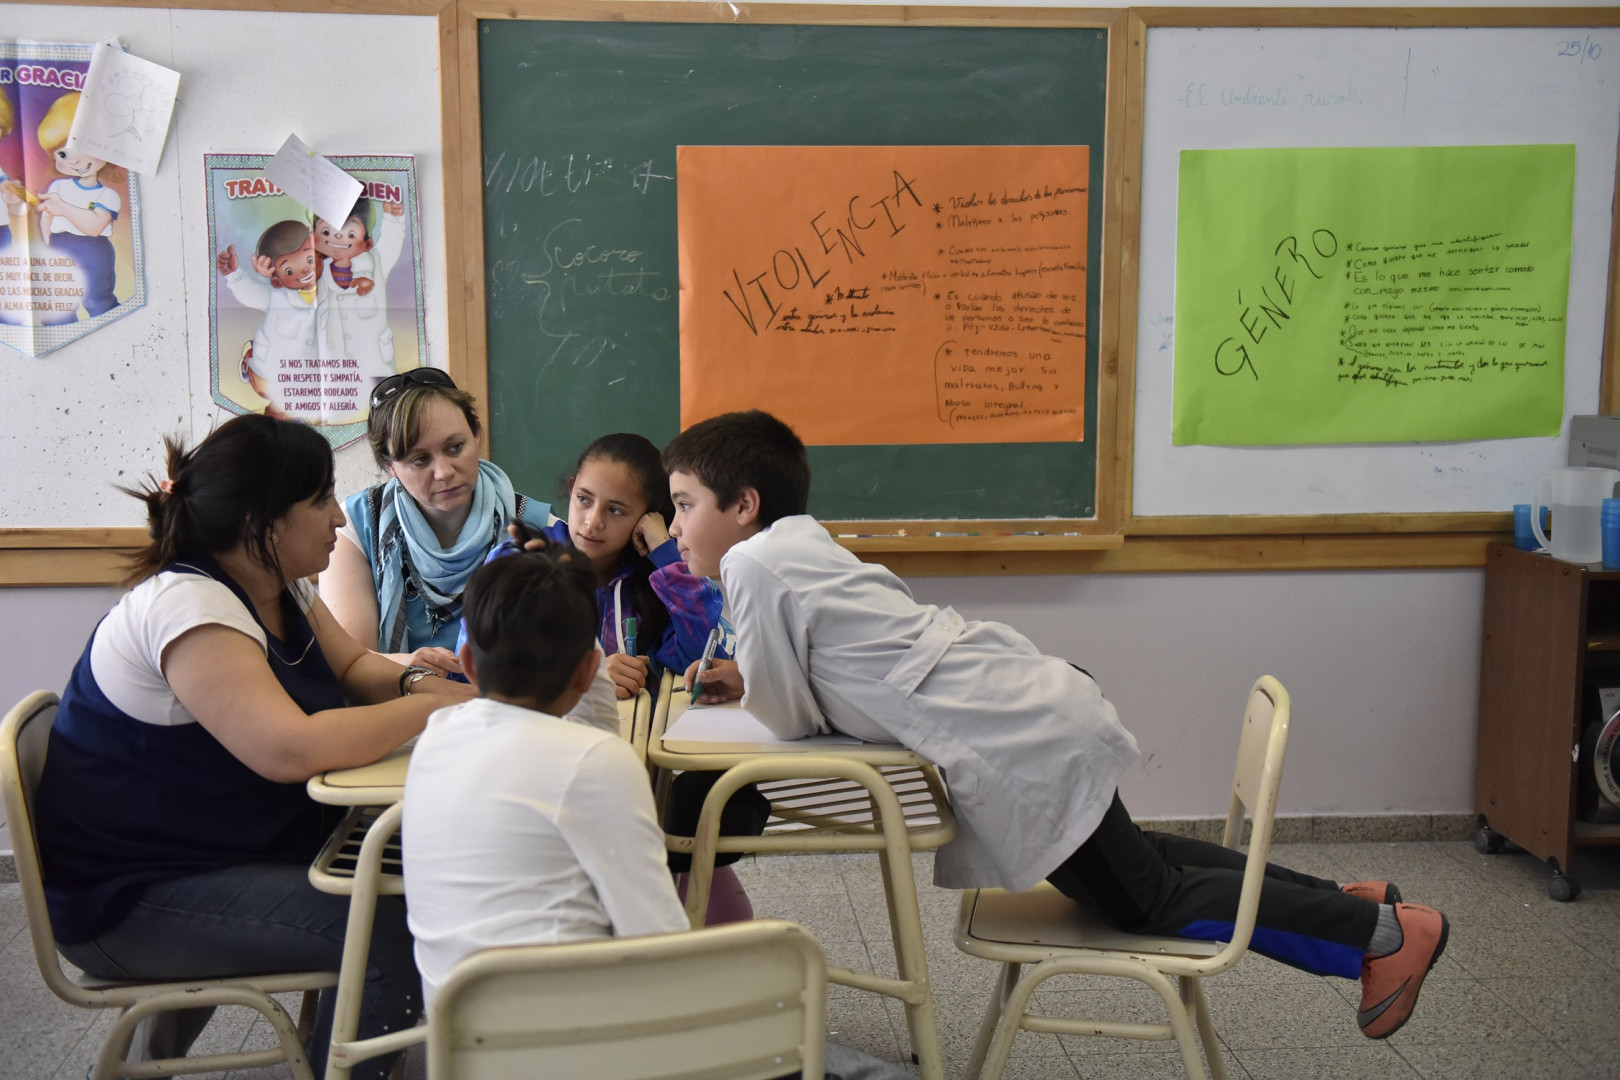 El 98 De Las Escuelas Primarias Trabajan Contenidos De Educación Sexual Integral Argentinagobar 3549